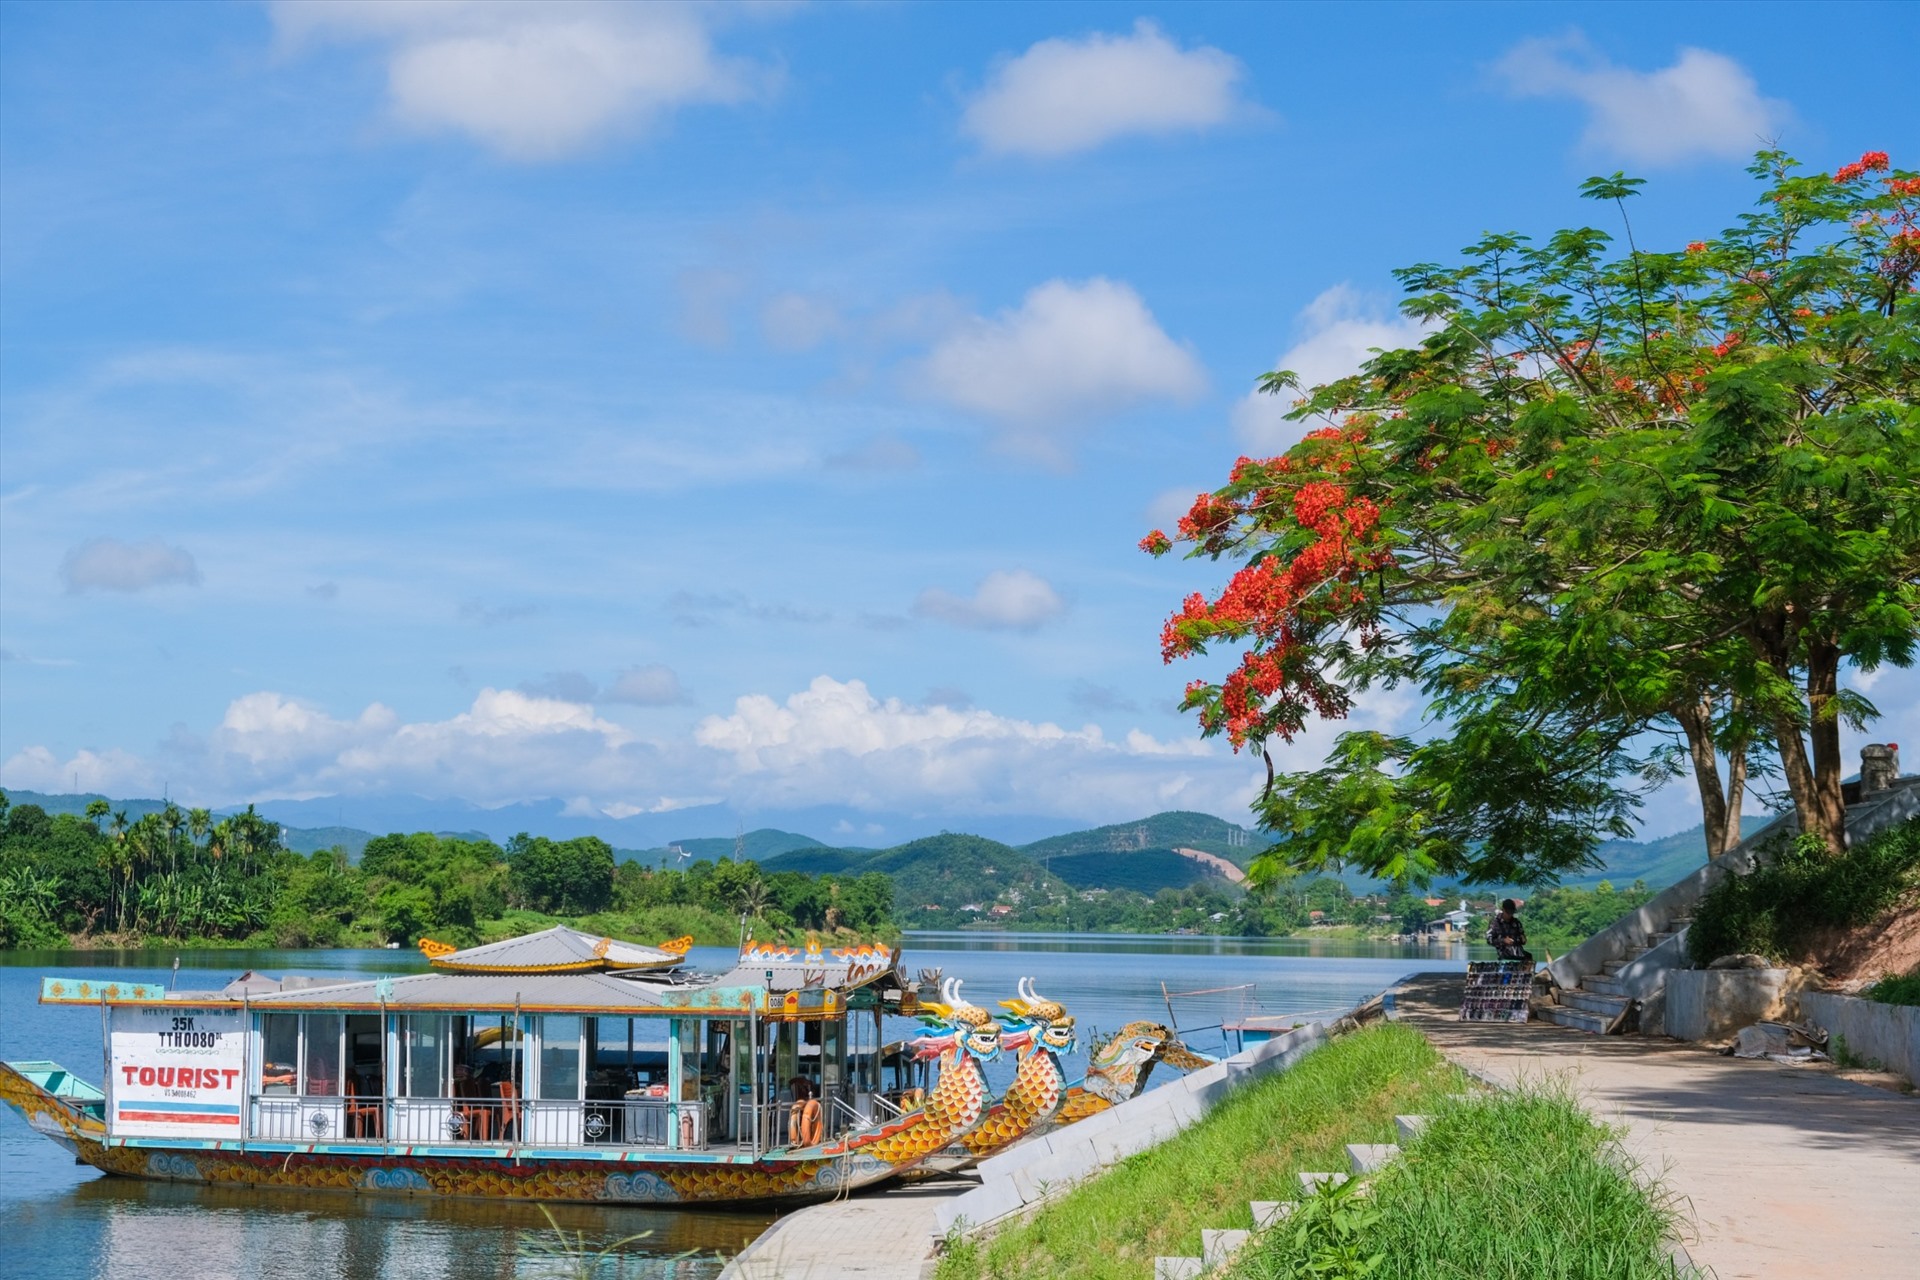 Vừa qua, UBND tỉnh Thừa Thiên Huế đã thống nhất sẽ thiết kế một mẫu thuyền mới, giao Sở Du lịch phối hợp với Sở GTVT nghiên cứu, thực hiện các quy trình. Mẫu thuyền này phải đáp ứng các tiêu chí về mẫu mã và kỹ thuật, phù hợp với việc khai thác dịch vụ du lịch vốn có trên sông Hương.